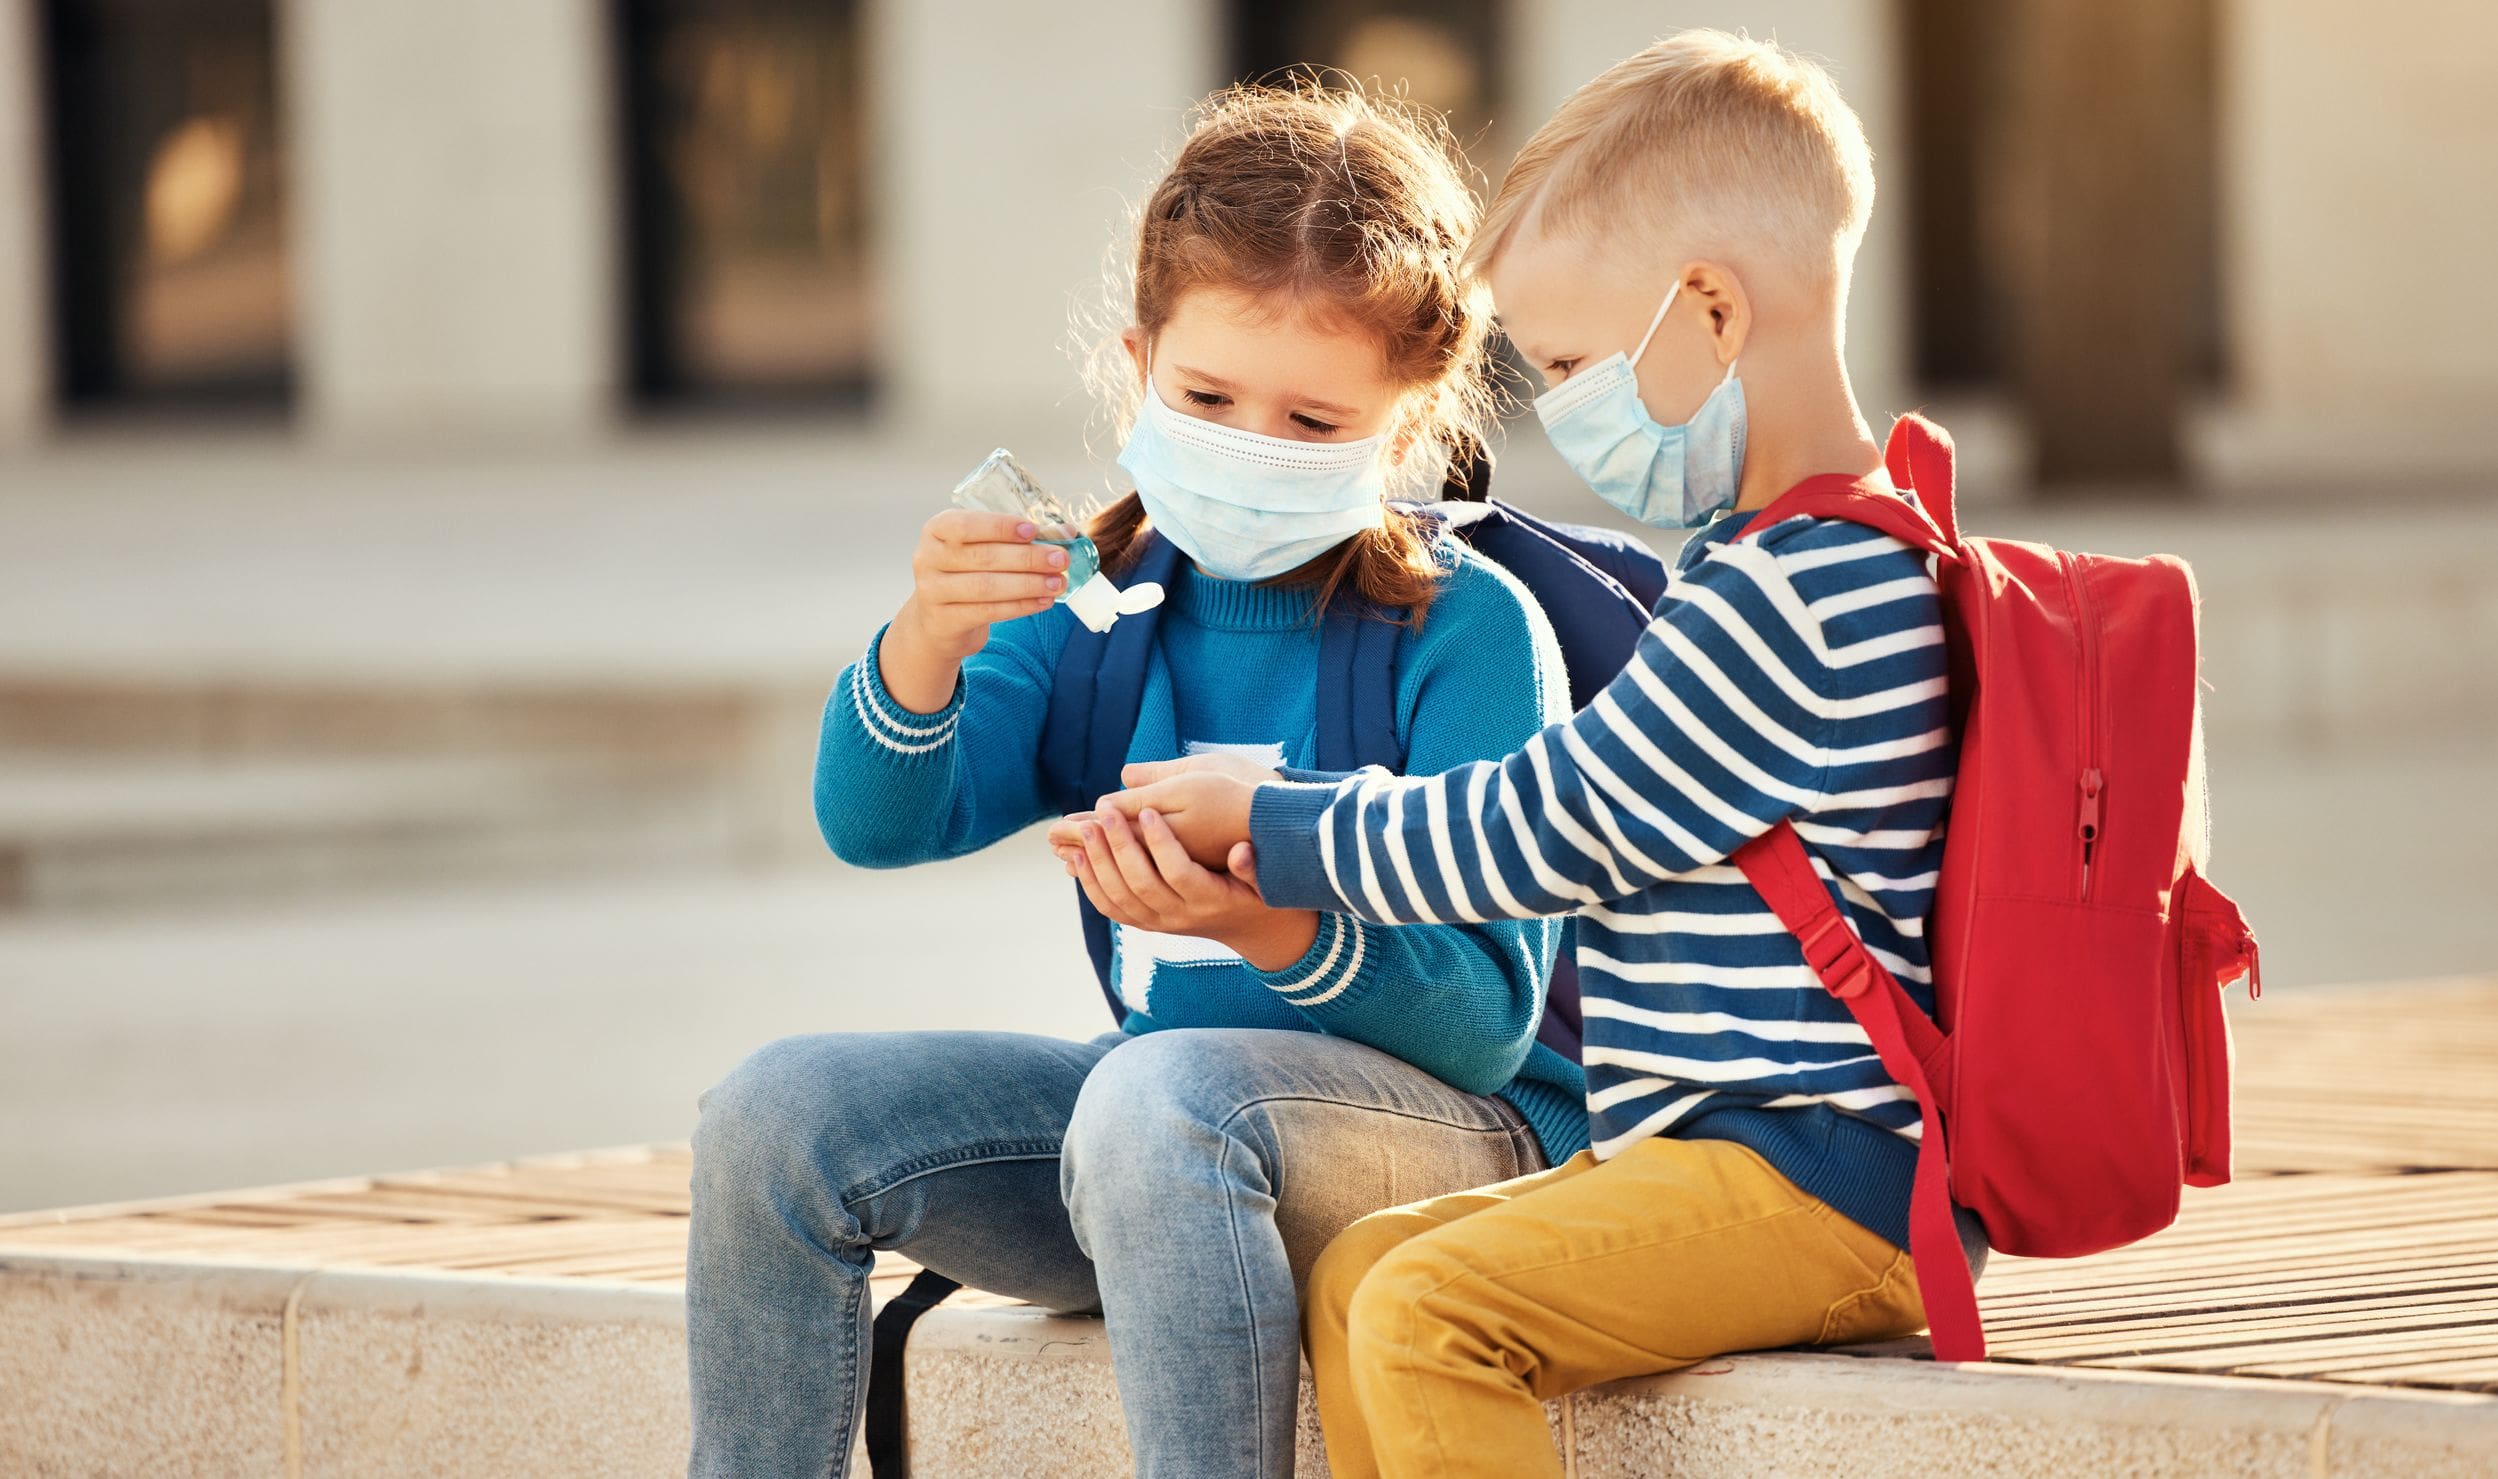 Are kids immune to coronavirus?